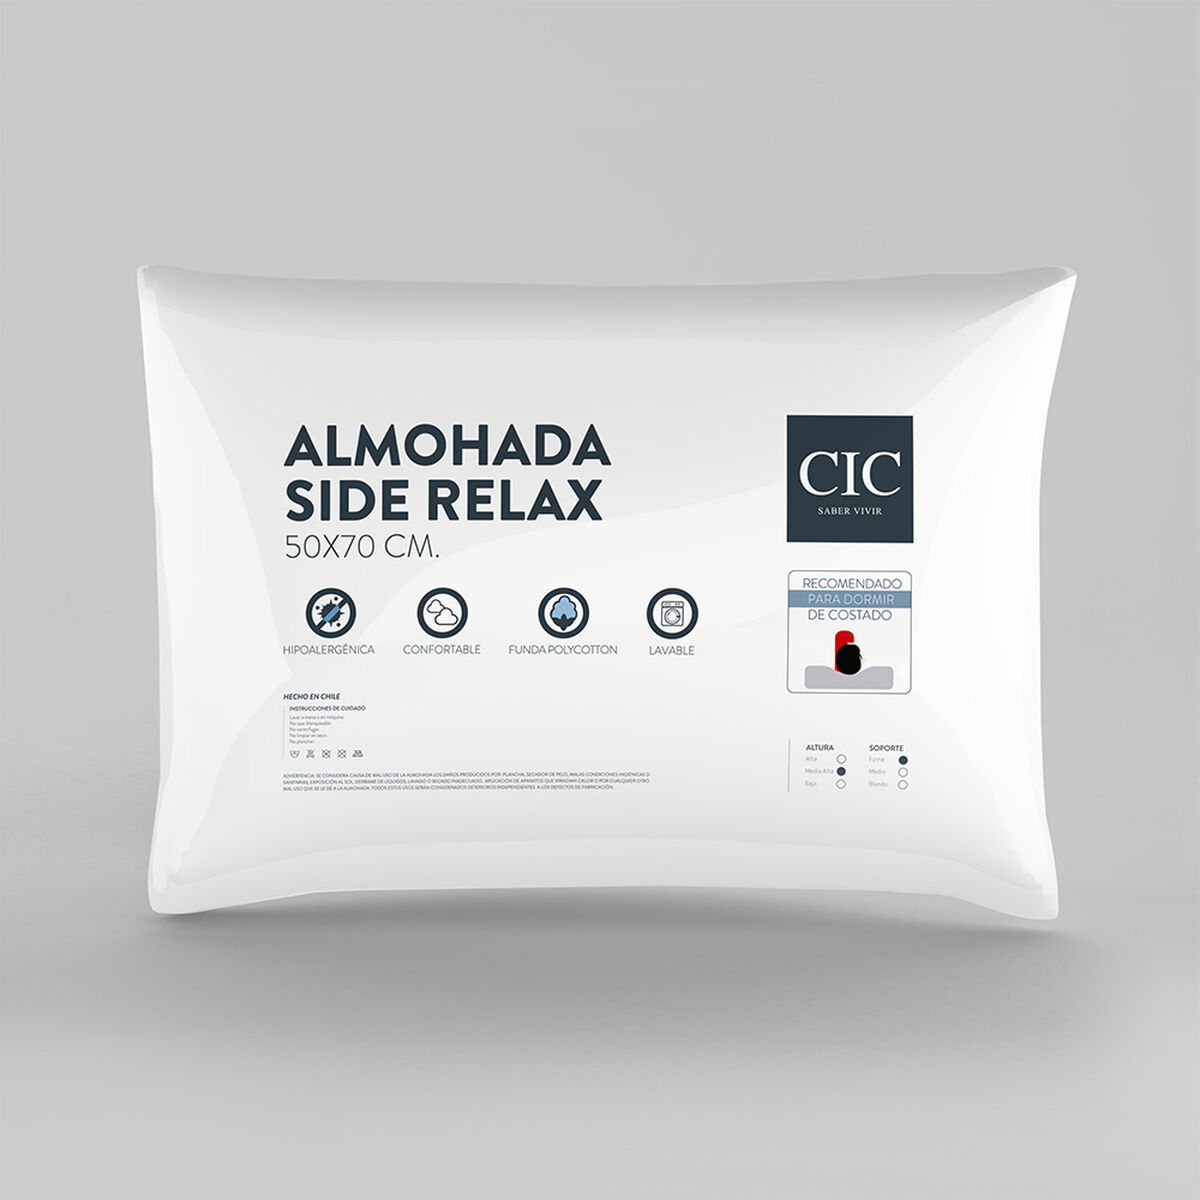 Almohada CIC Fibra Side Relax 50 x 70 cm